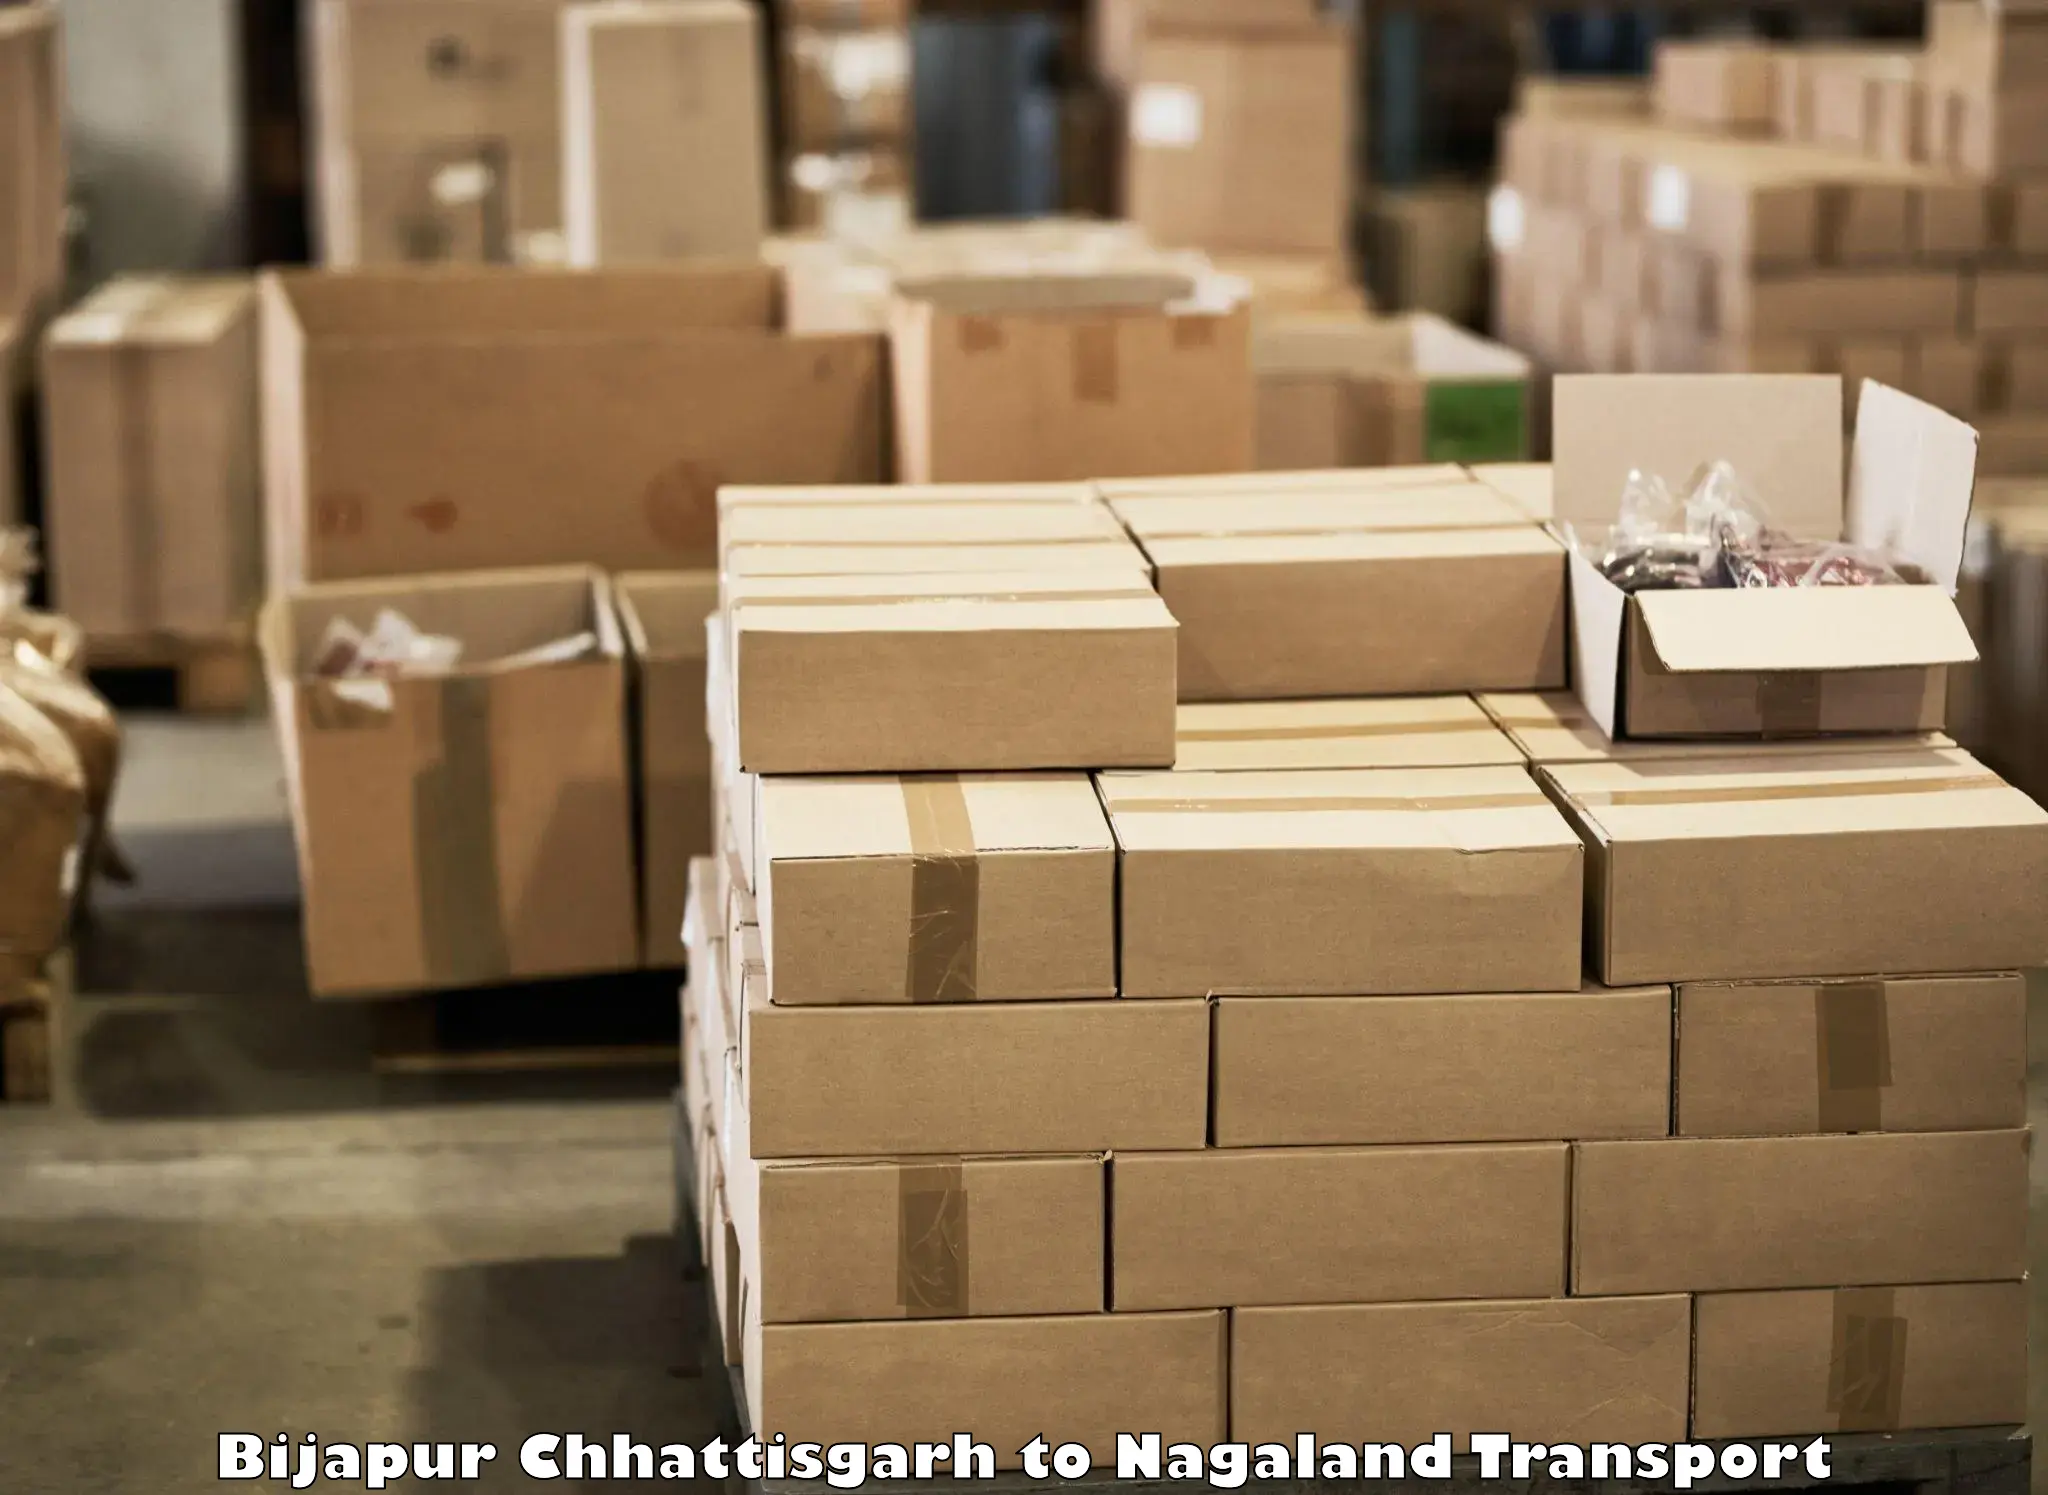 Delivery service Bijapur Chhattisgarh to Kohima